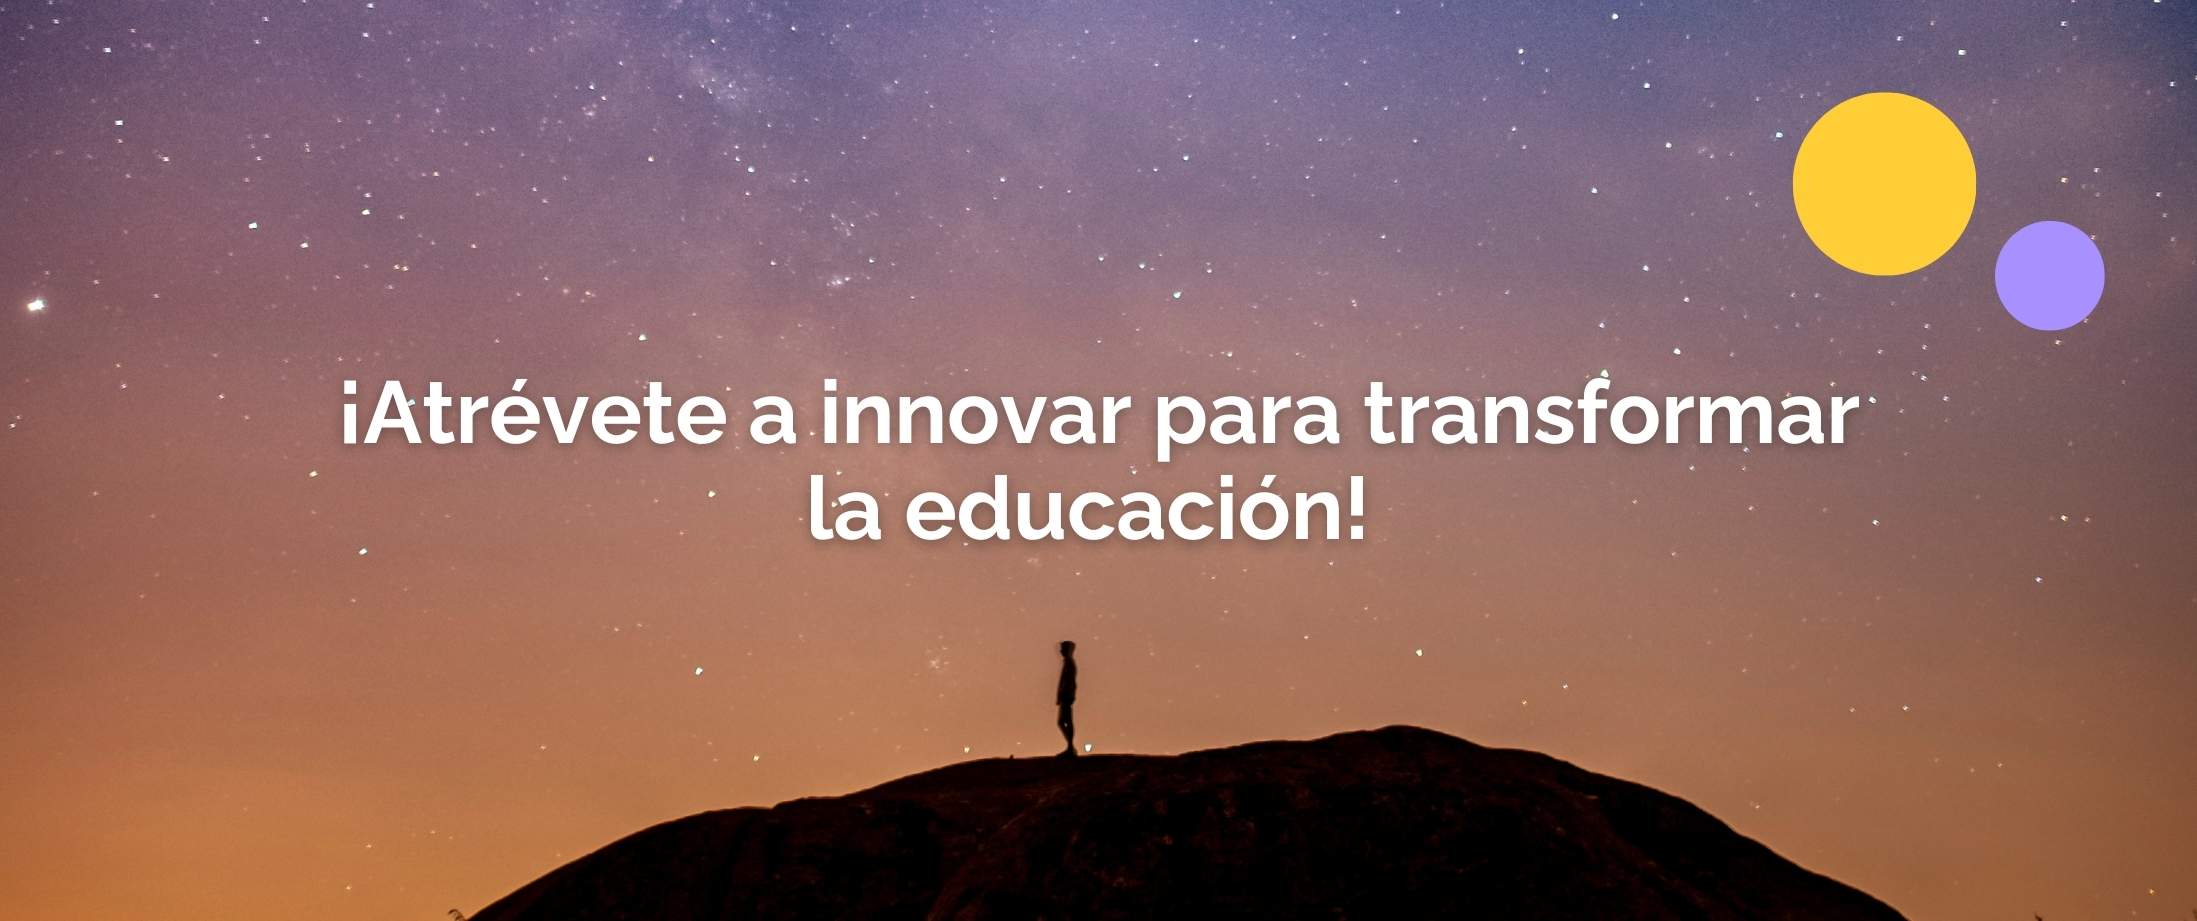 Atrévete a innovar para transformar la educación